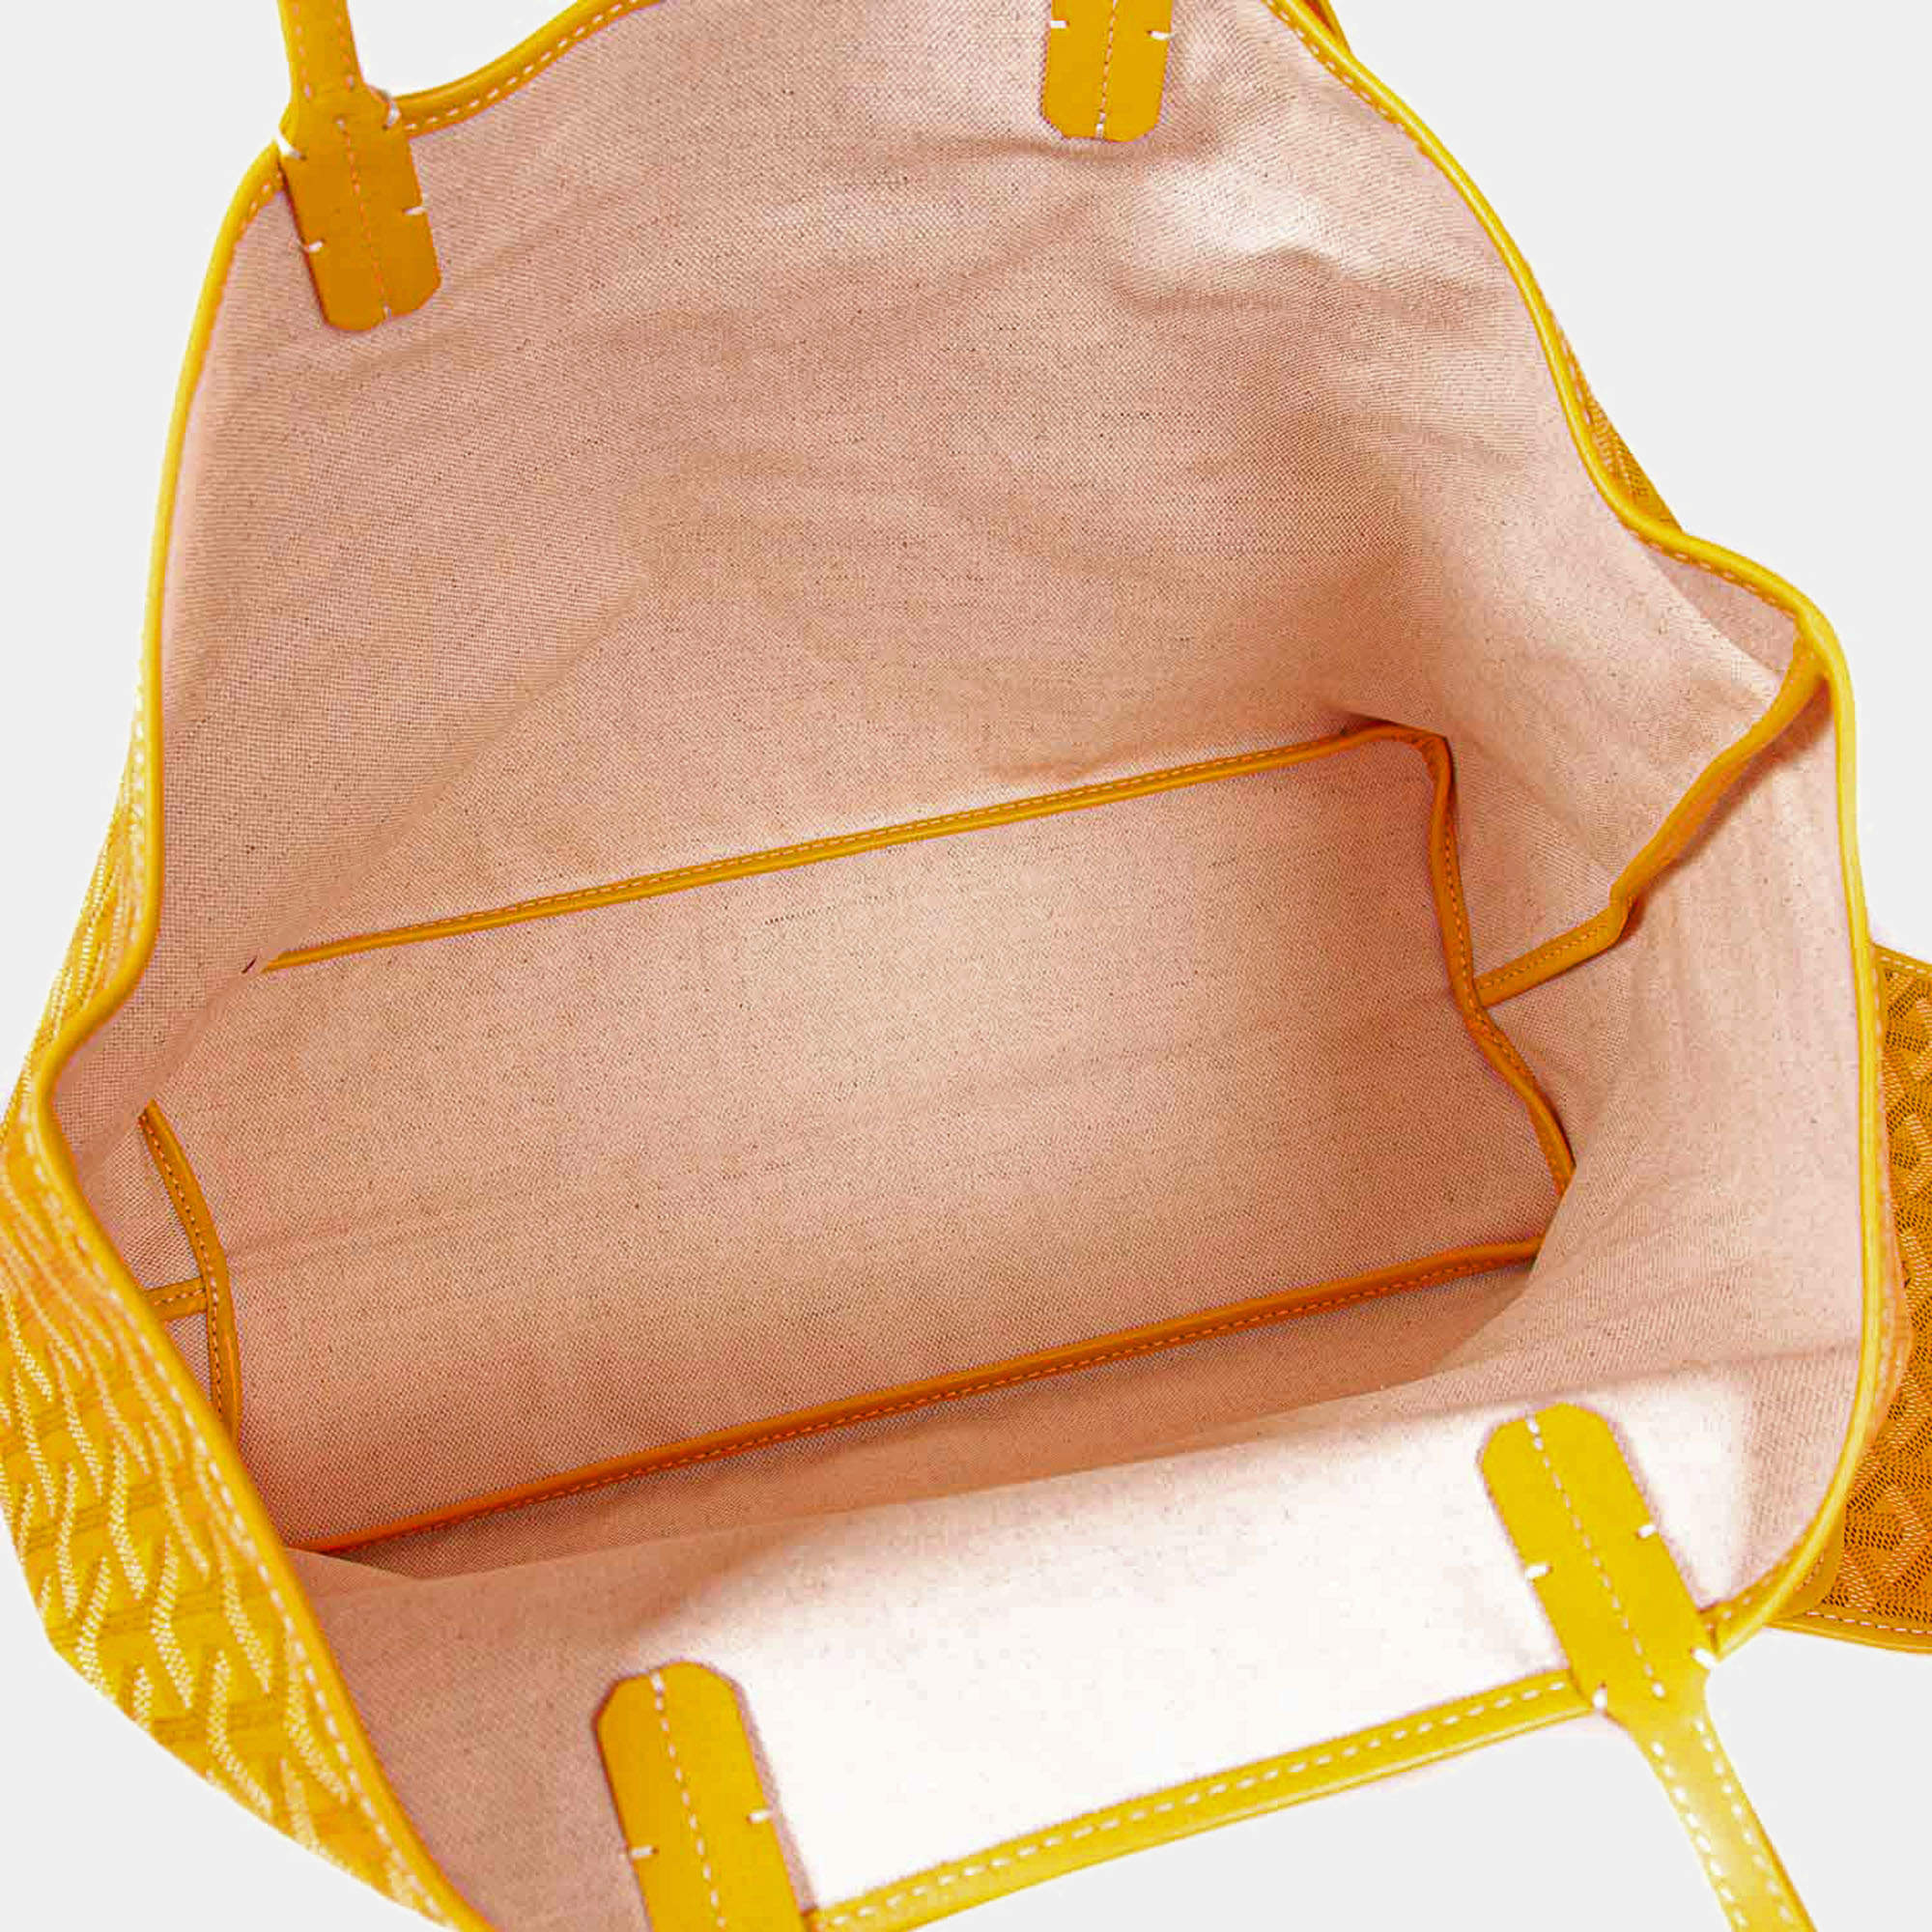 Goyard GOYARD Saint Louis PM Tote Bag Yellow P14343 – NUIR VINTAGE